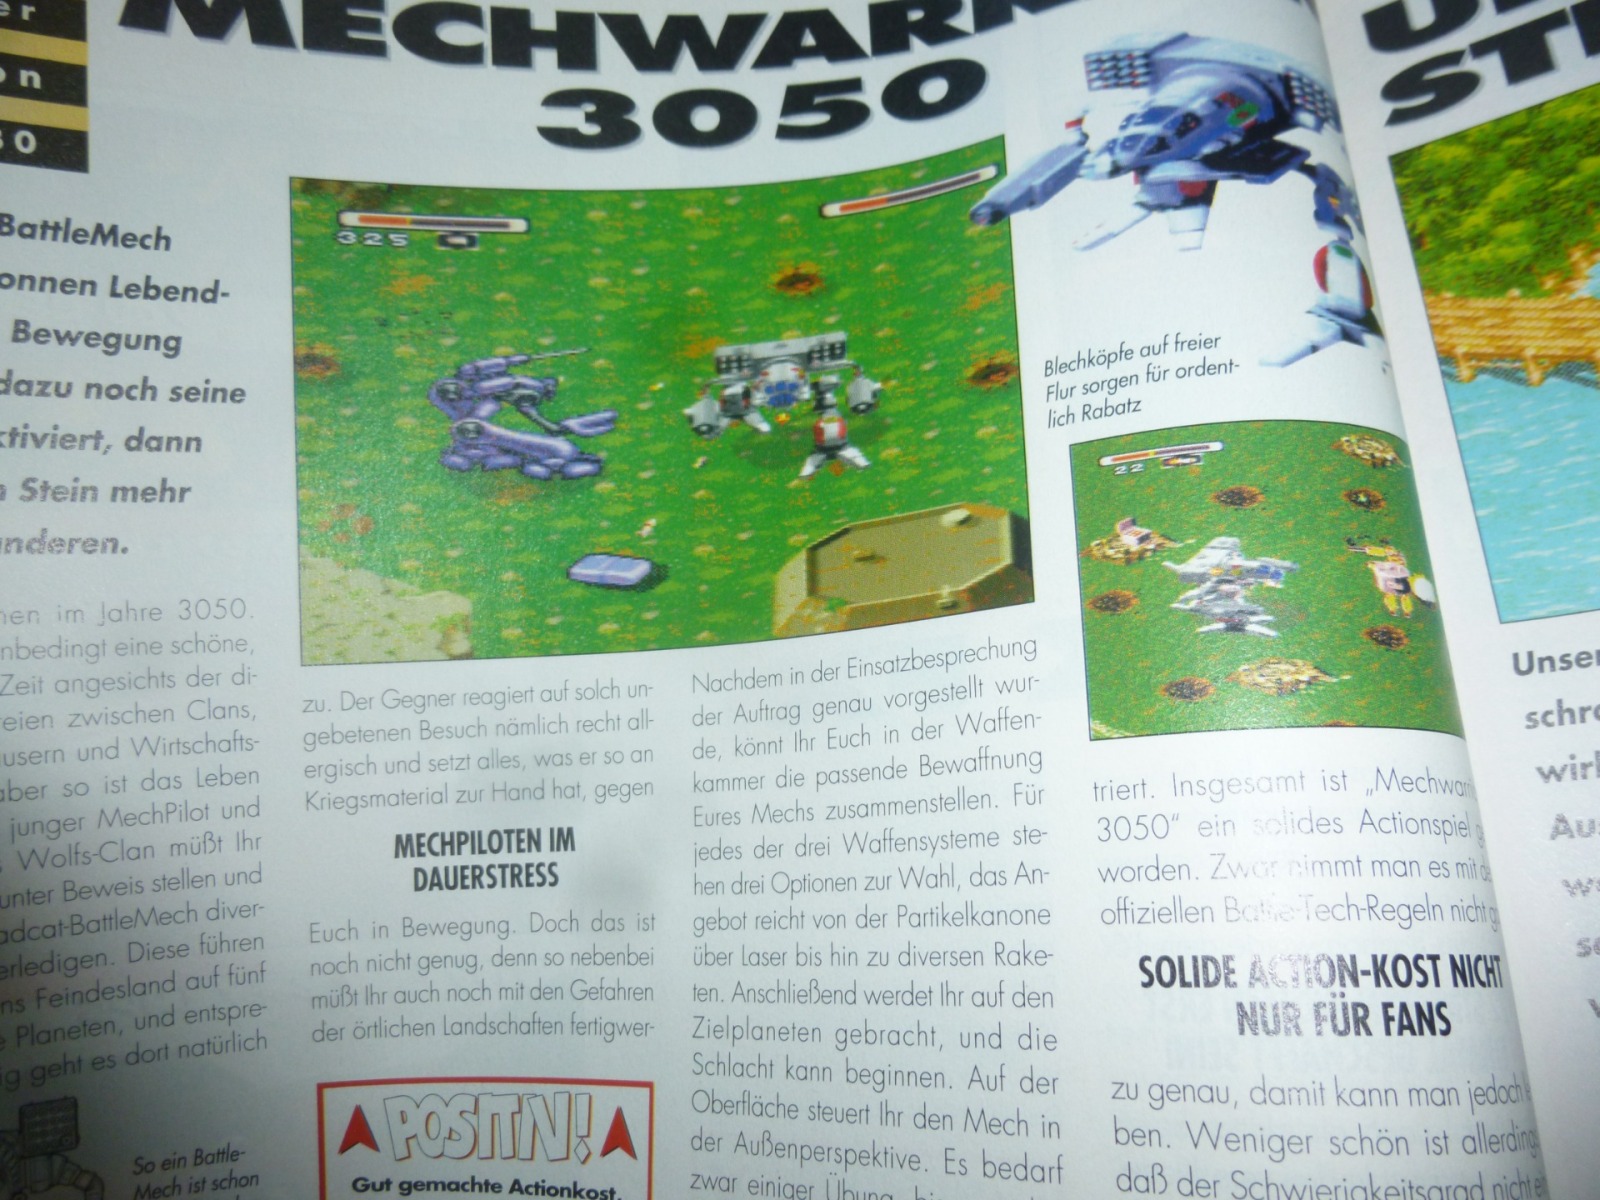 TOTAL Das unabhängige Magazin - 100 Nintendo - Ausgabe 2/96 1996 12